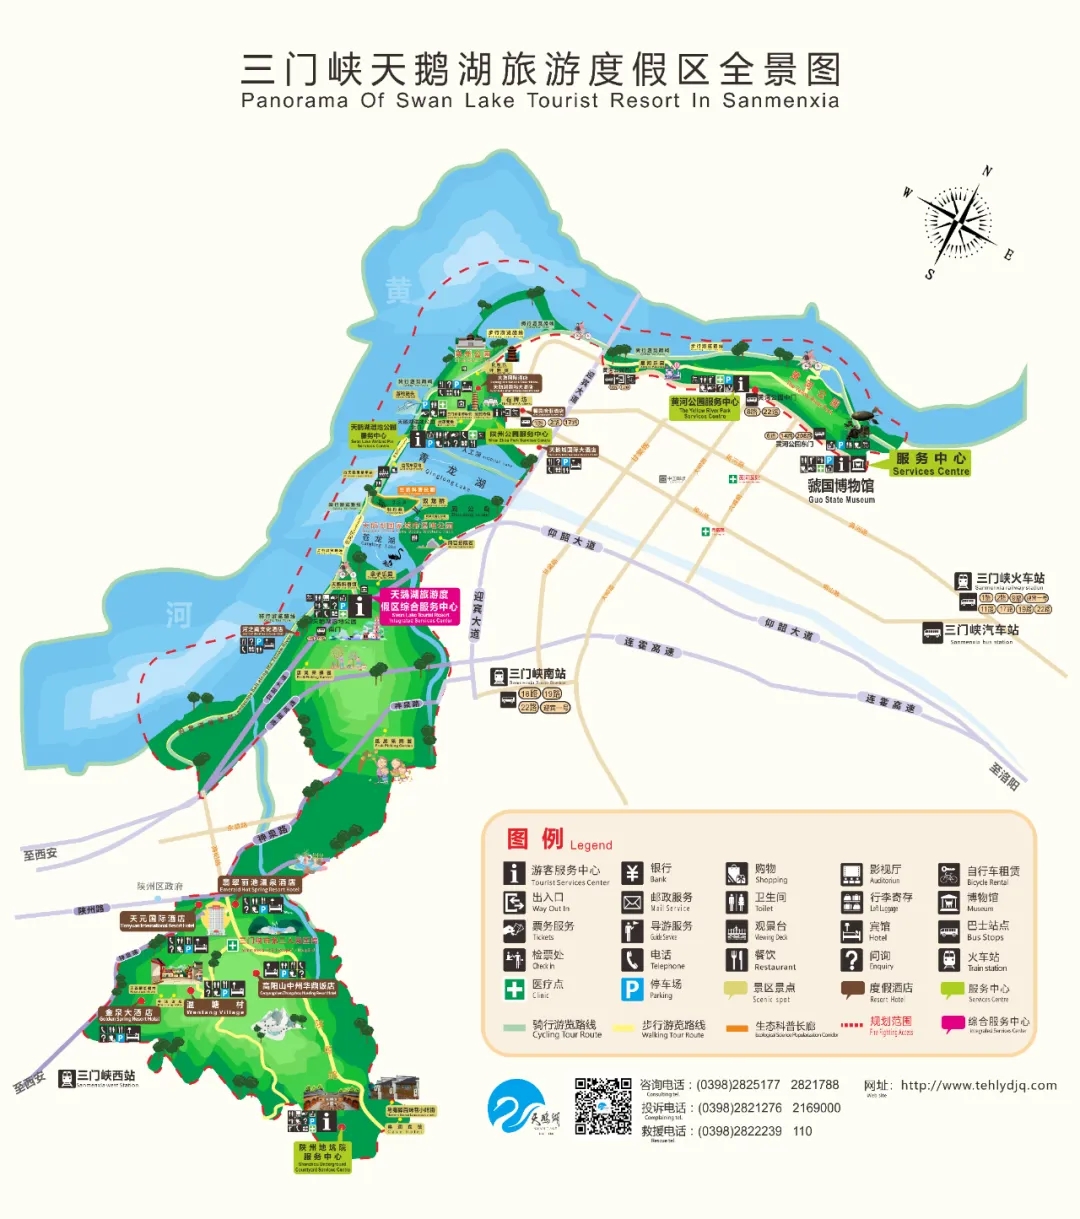 三门峡天鹅湖旅游度假区在这里等你!